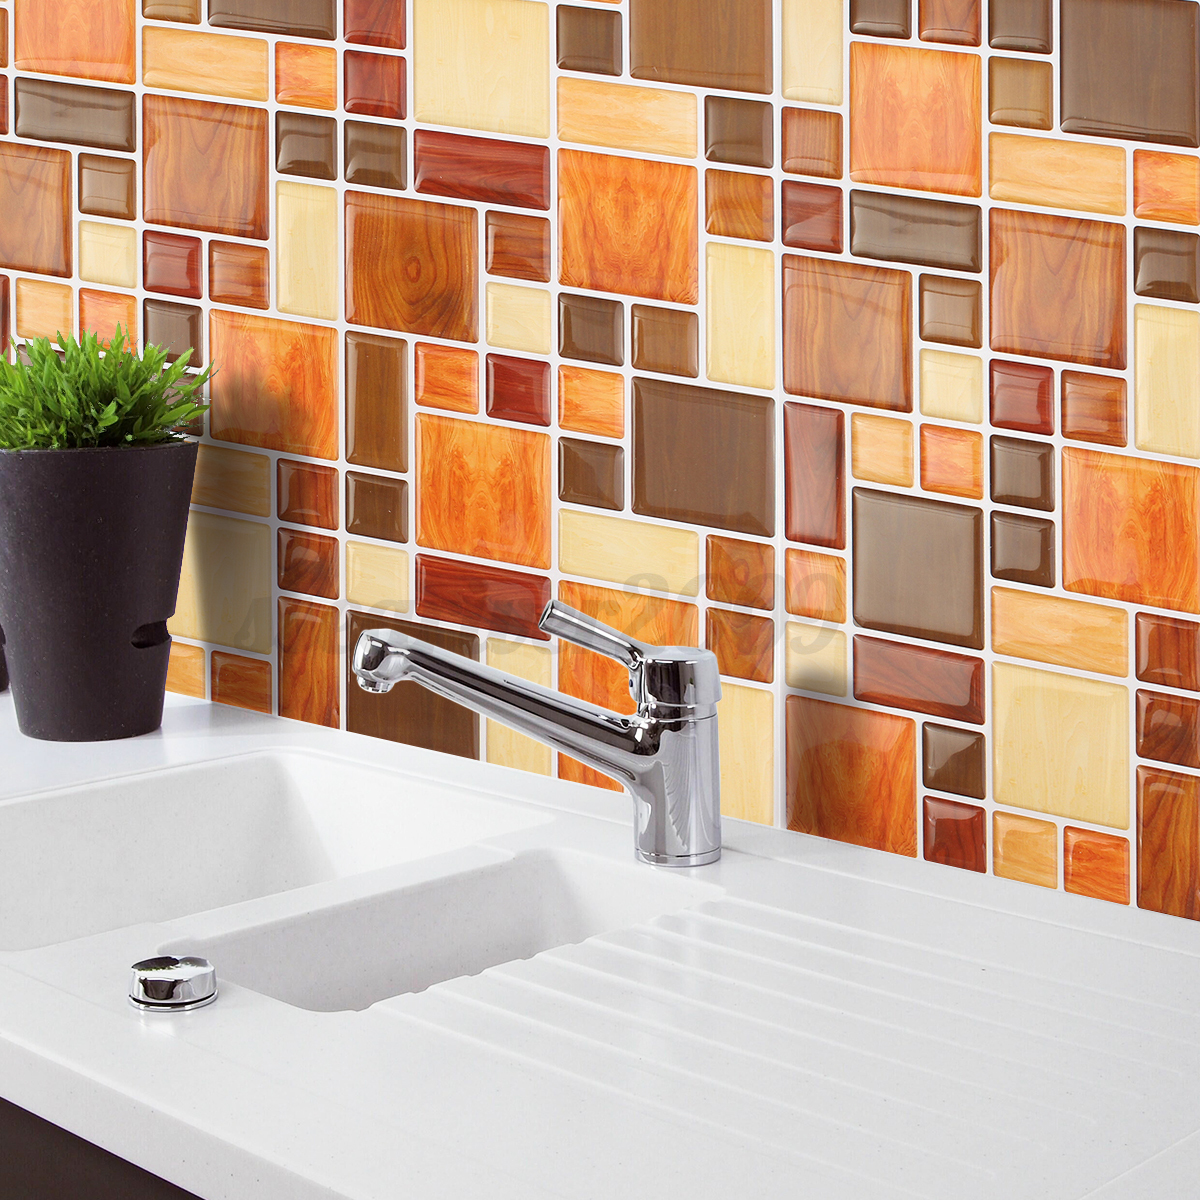 kitchen tile wallpaper,tile,room,property,wall,orange